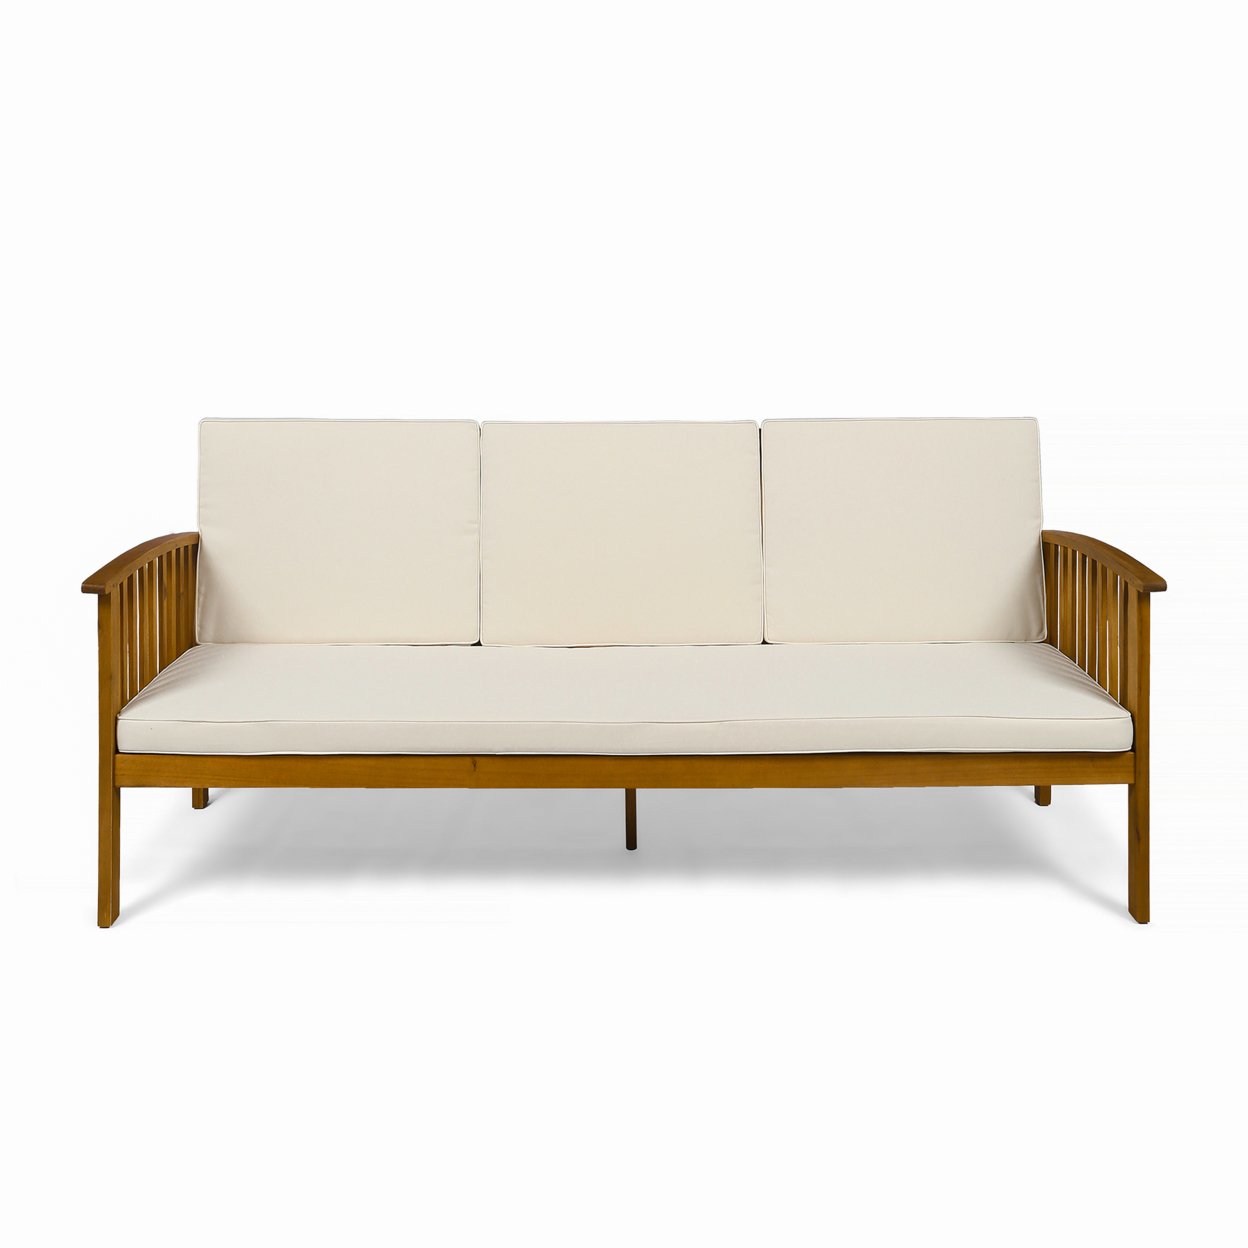 Breenda Outdoor Acacia Wood Sofa With Cushions - Teak